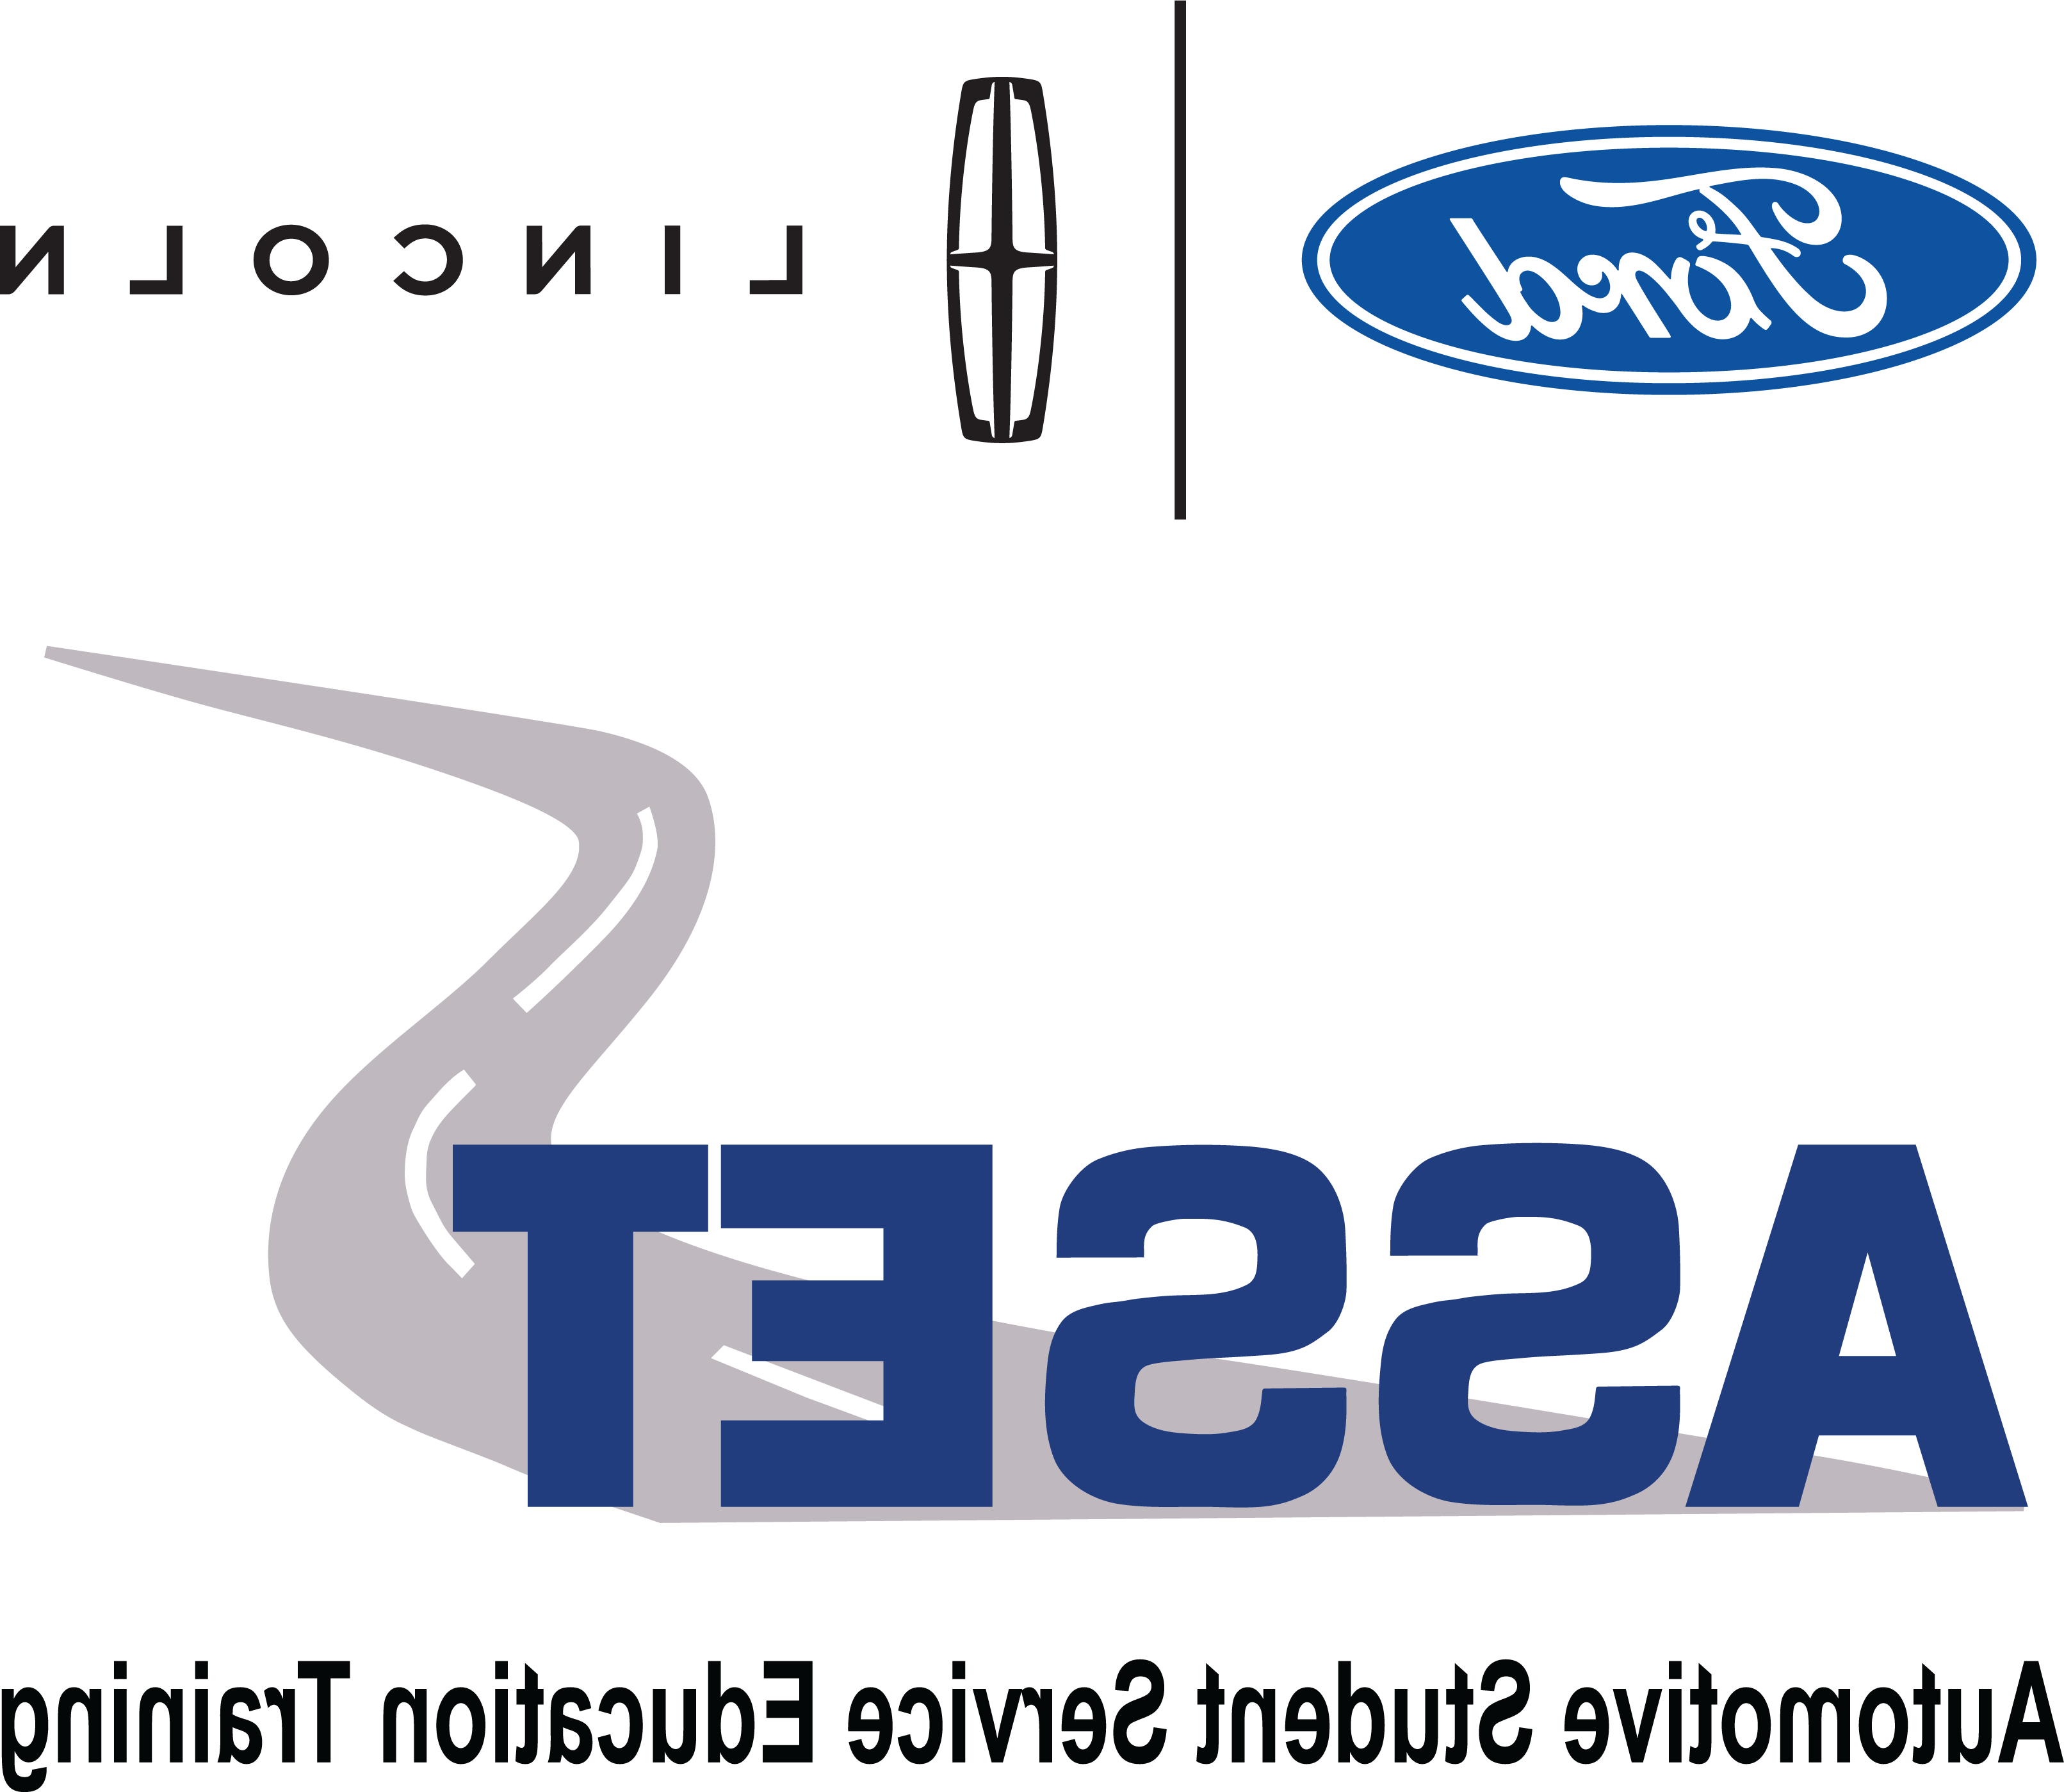 Ford Asset logo